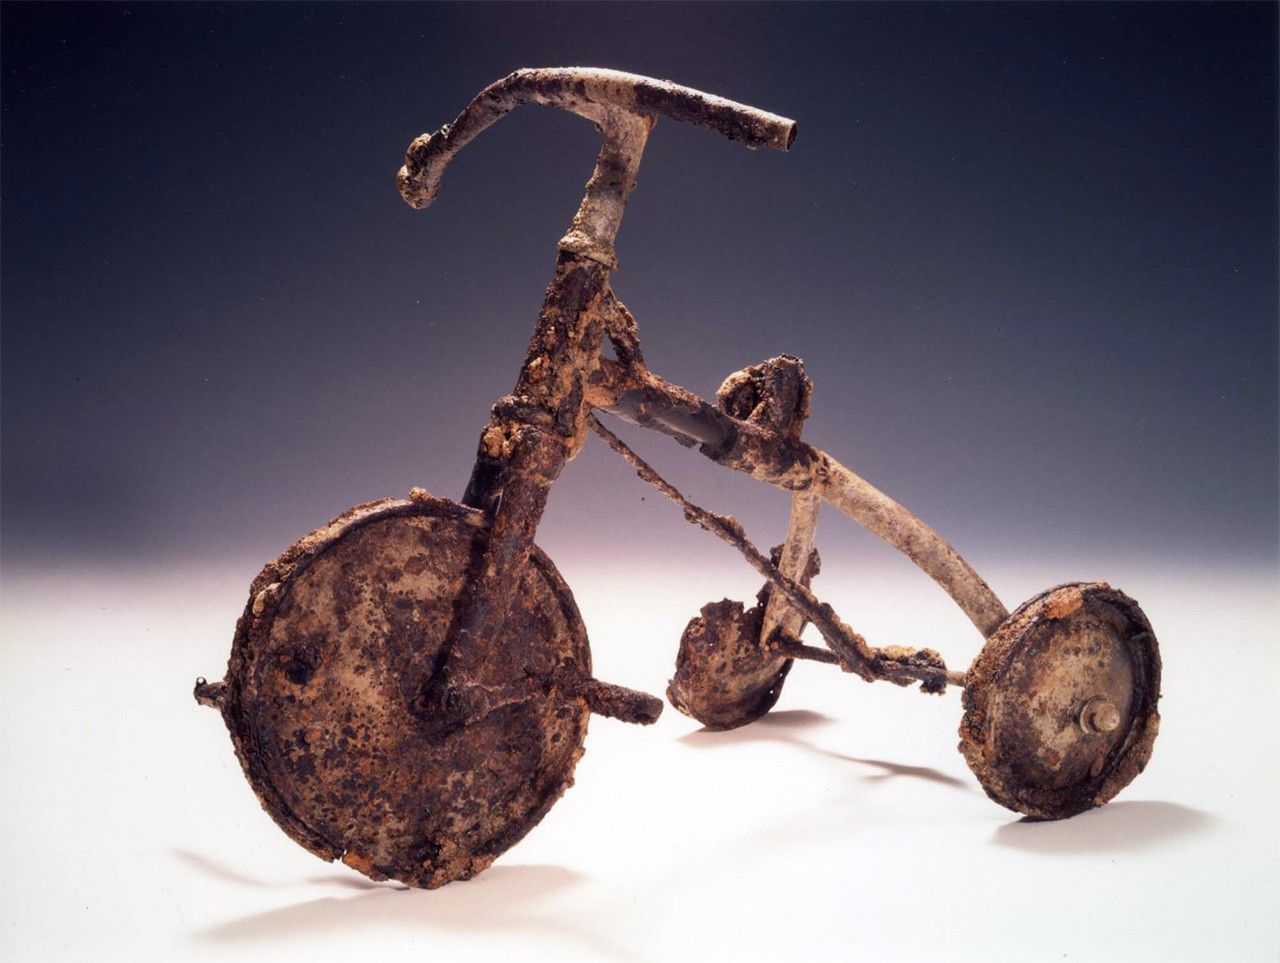 Le tricycle, donné au musée par Tetsutani Nobuo